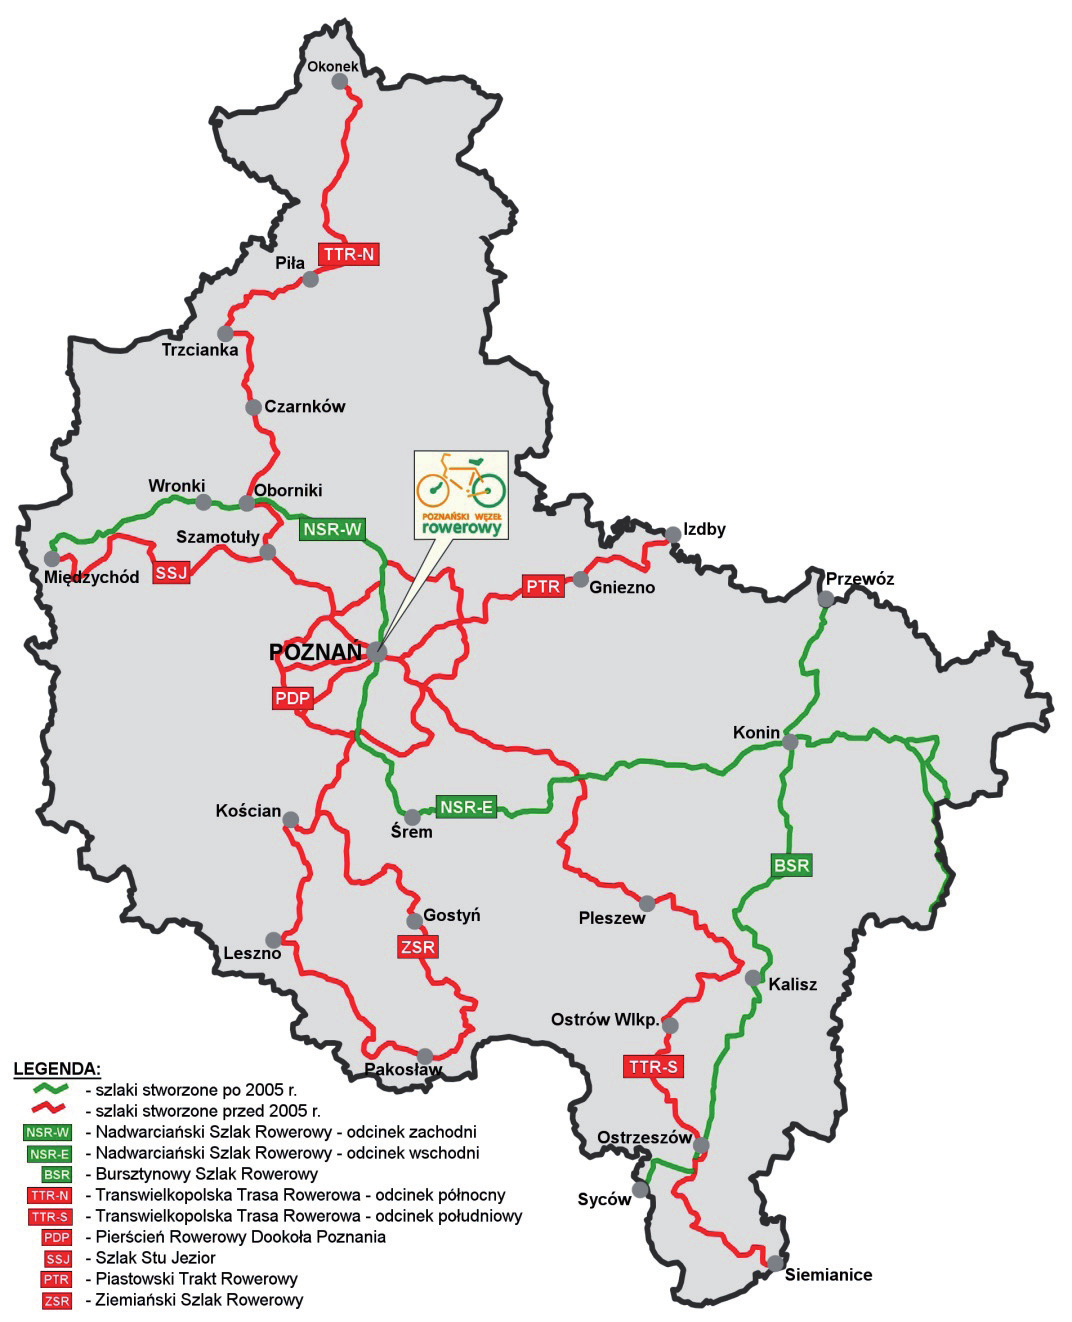 kańców Poznania. Trasa ta połączona jest z międzynarodowym szlakiem rowerowym R-1 (Calais Sankt Petersburg). Pierścień Dookoła Poznania jest najbardziej popularną trasą rowerową wśród cyklistów.